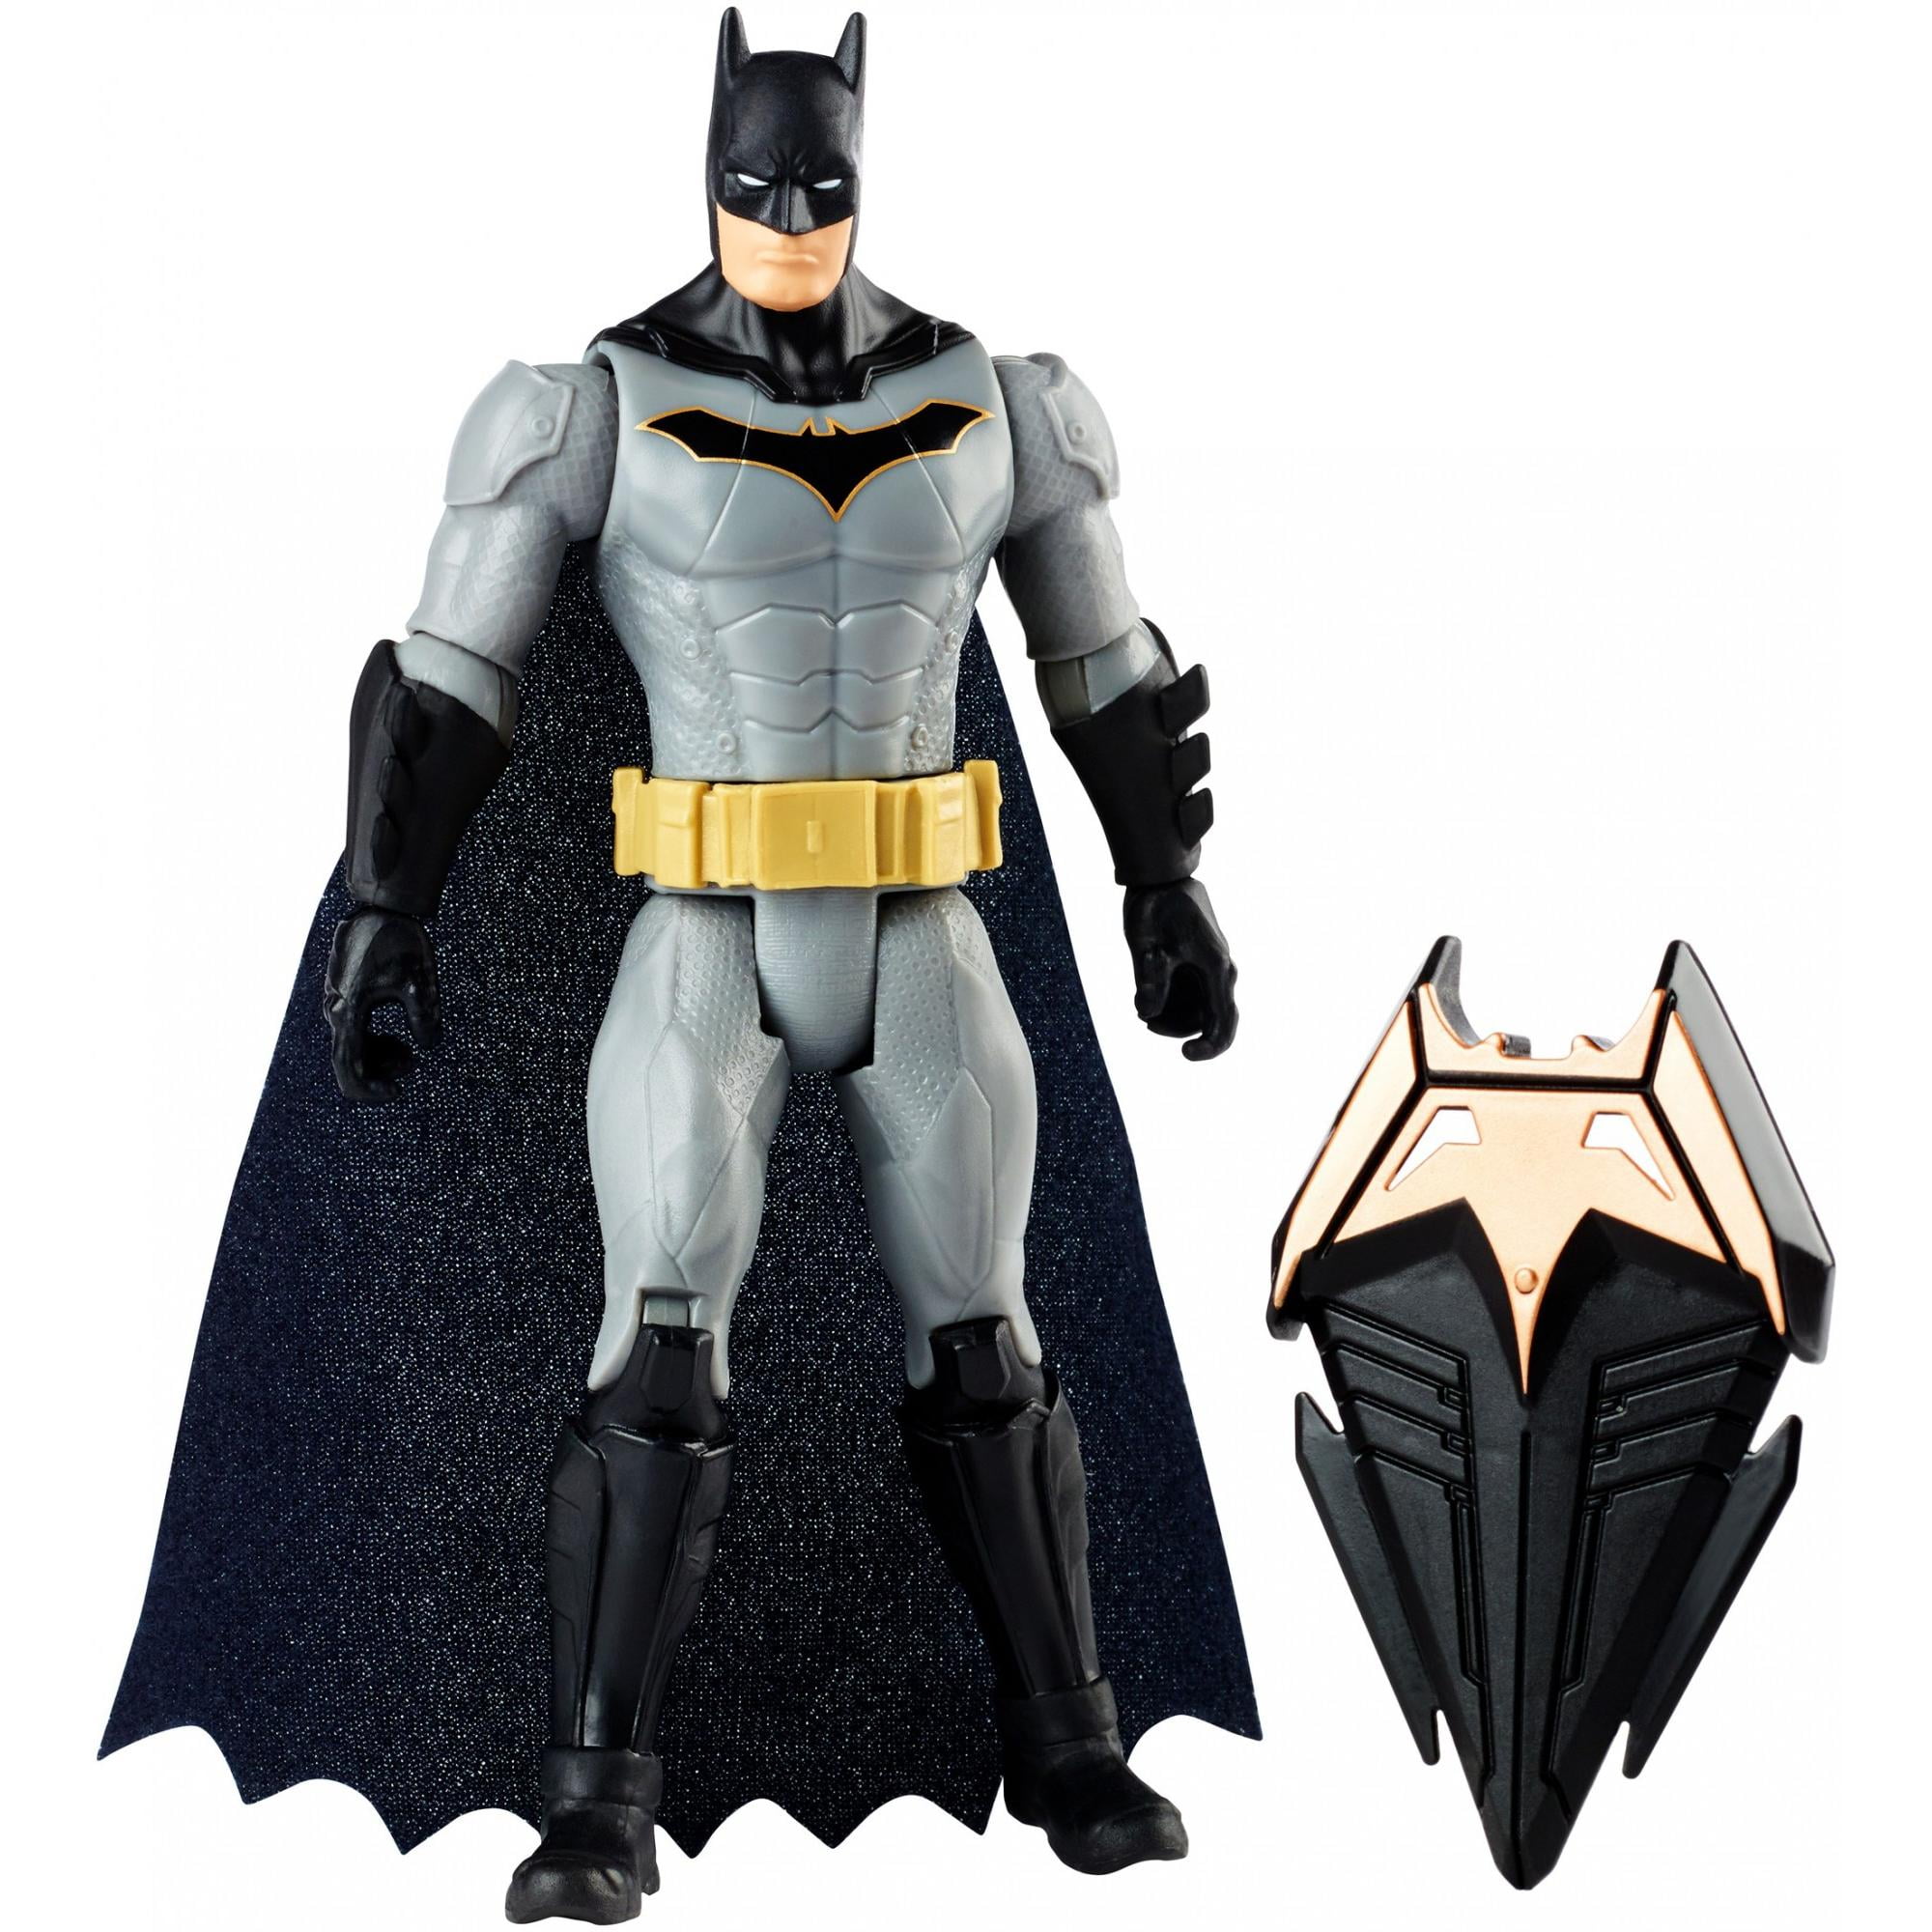 batman action figure 6 inch